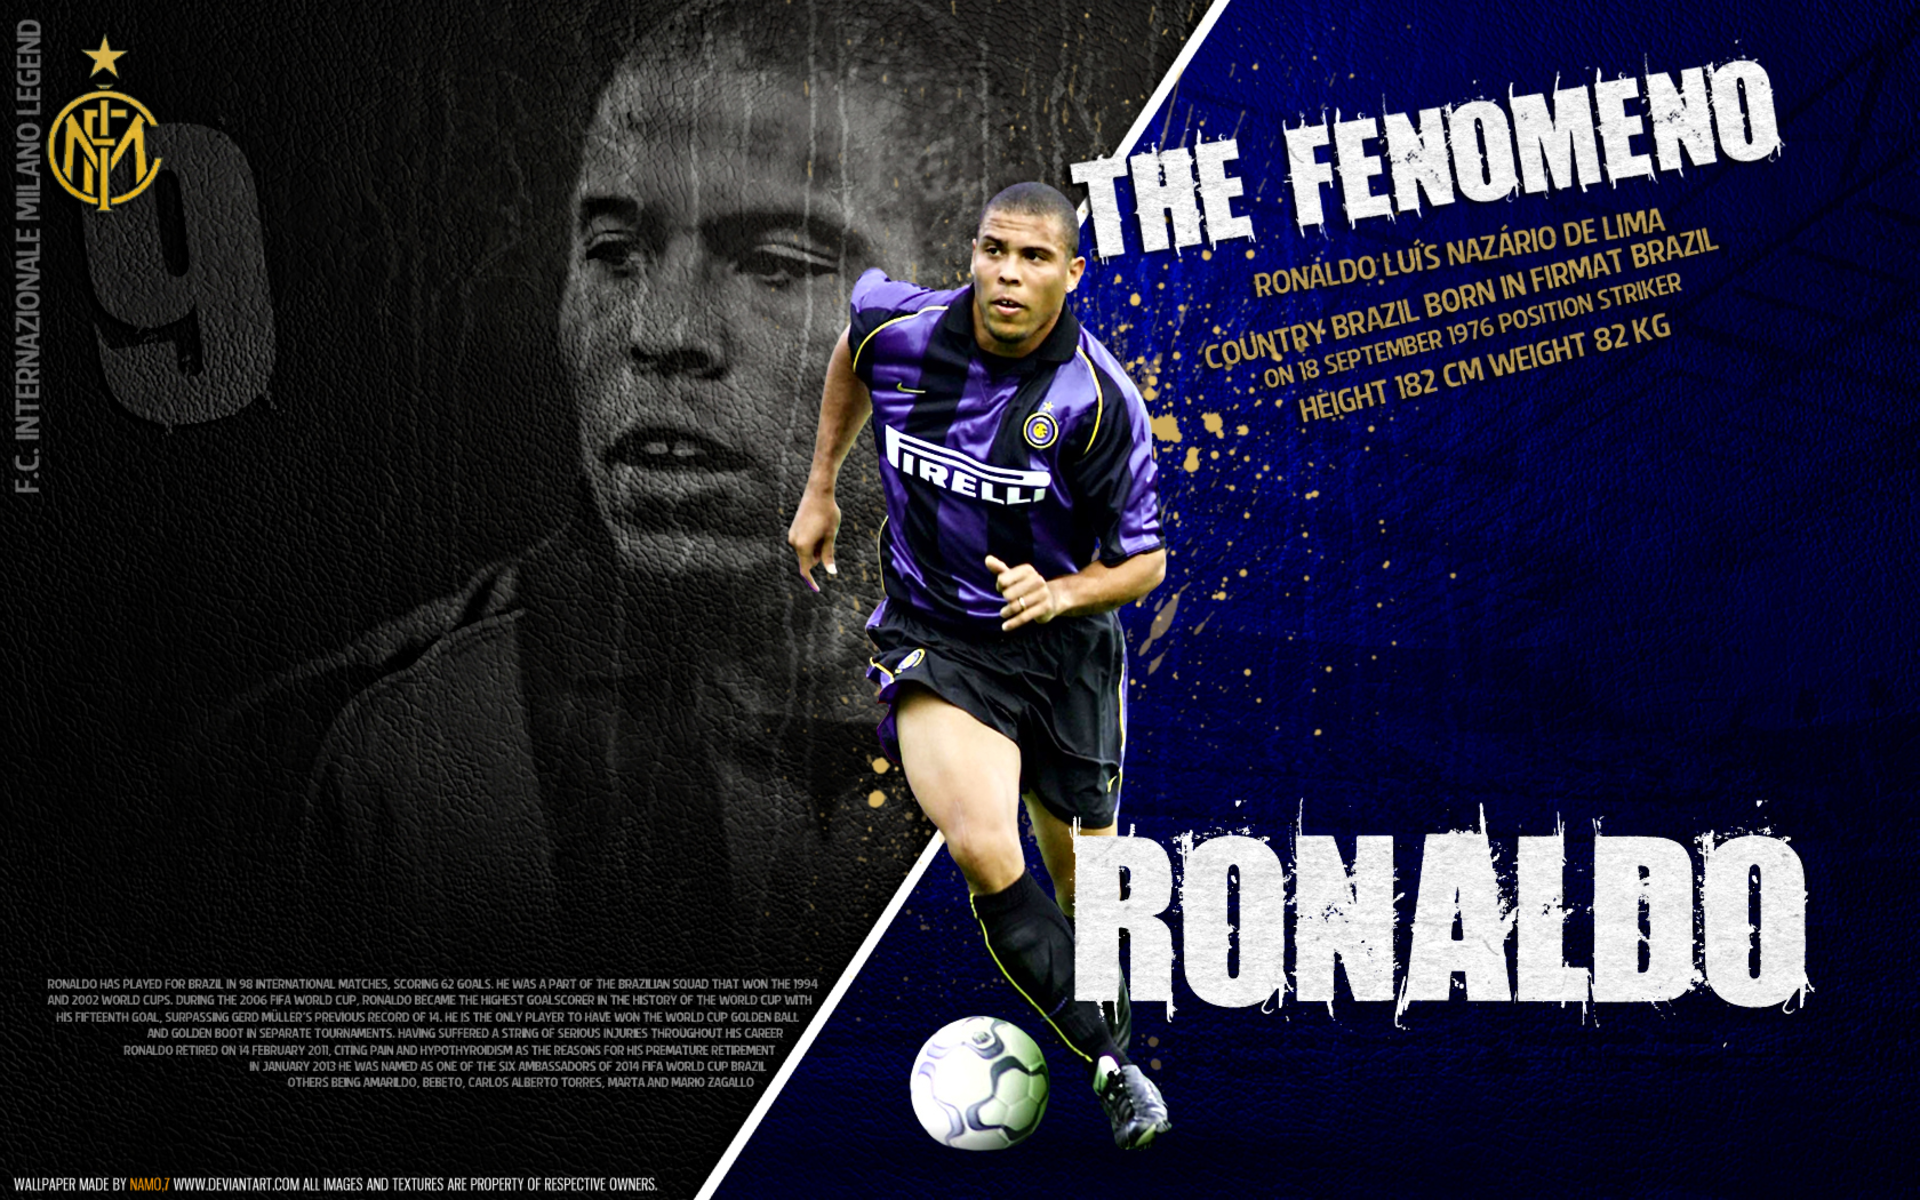 Ronaldo Nazário HD Wallpaper and Background